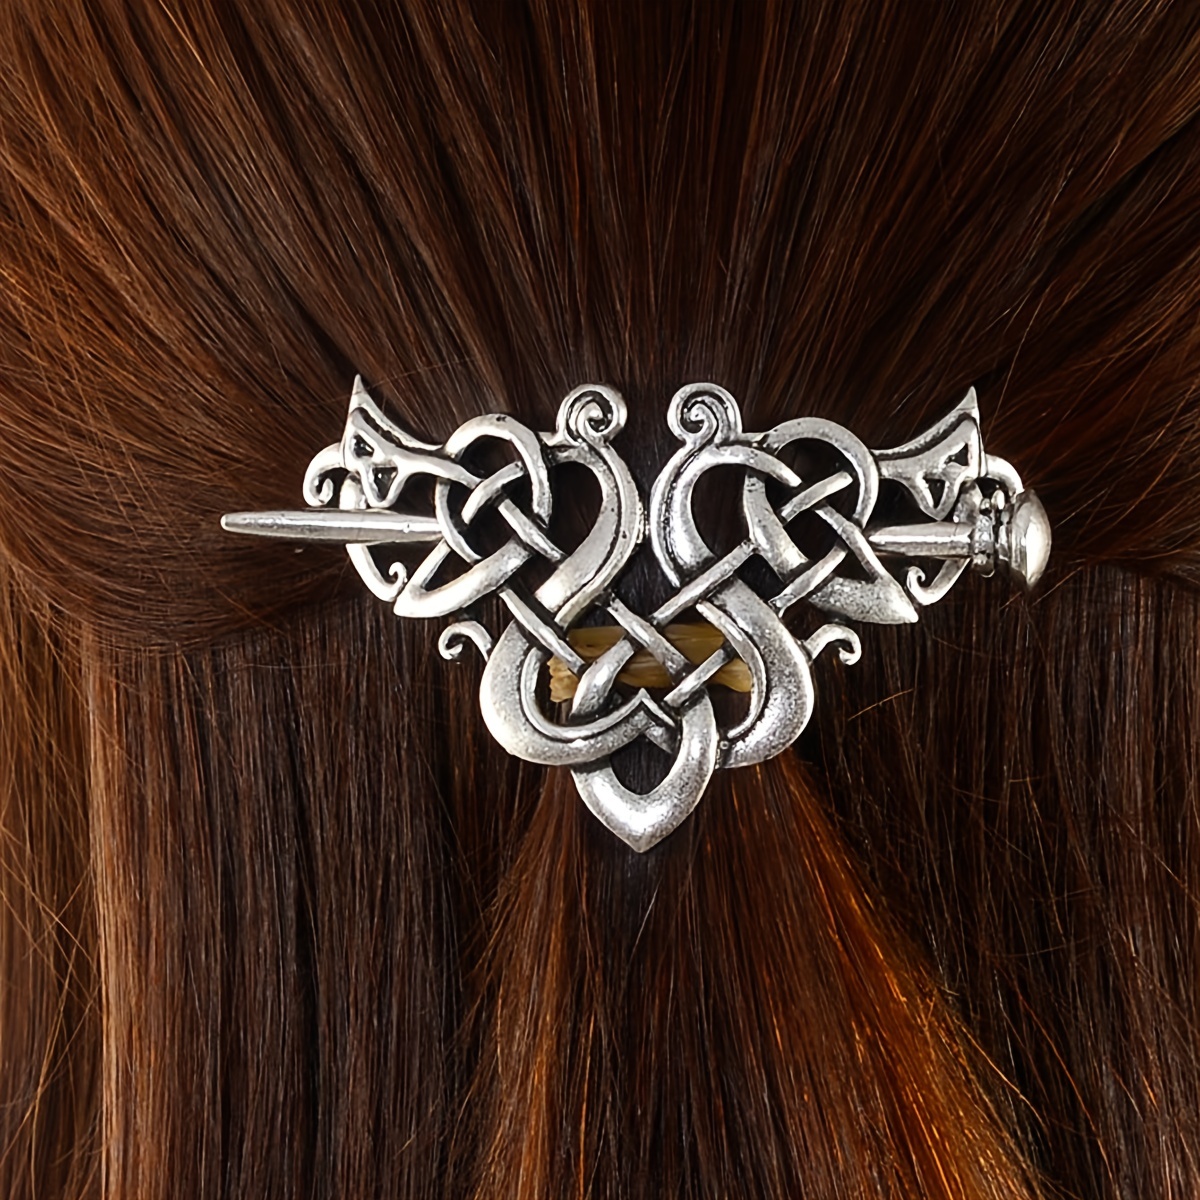 2 Pcs Knot Hair Clips Viking Hair Accessories Vintage Braids Hair